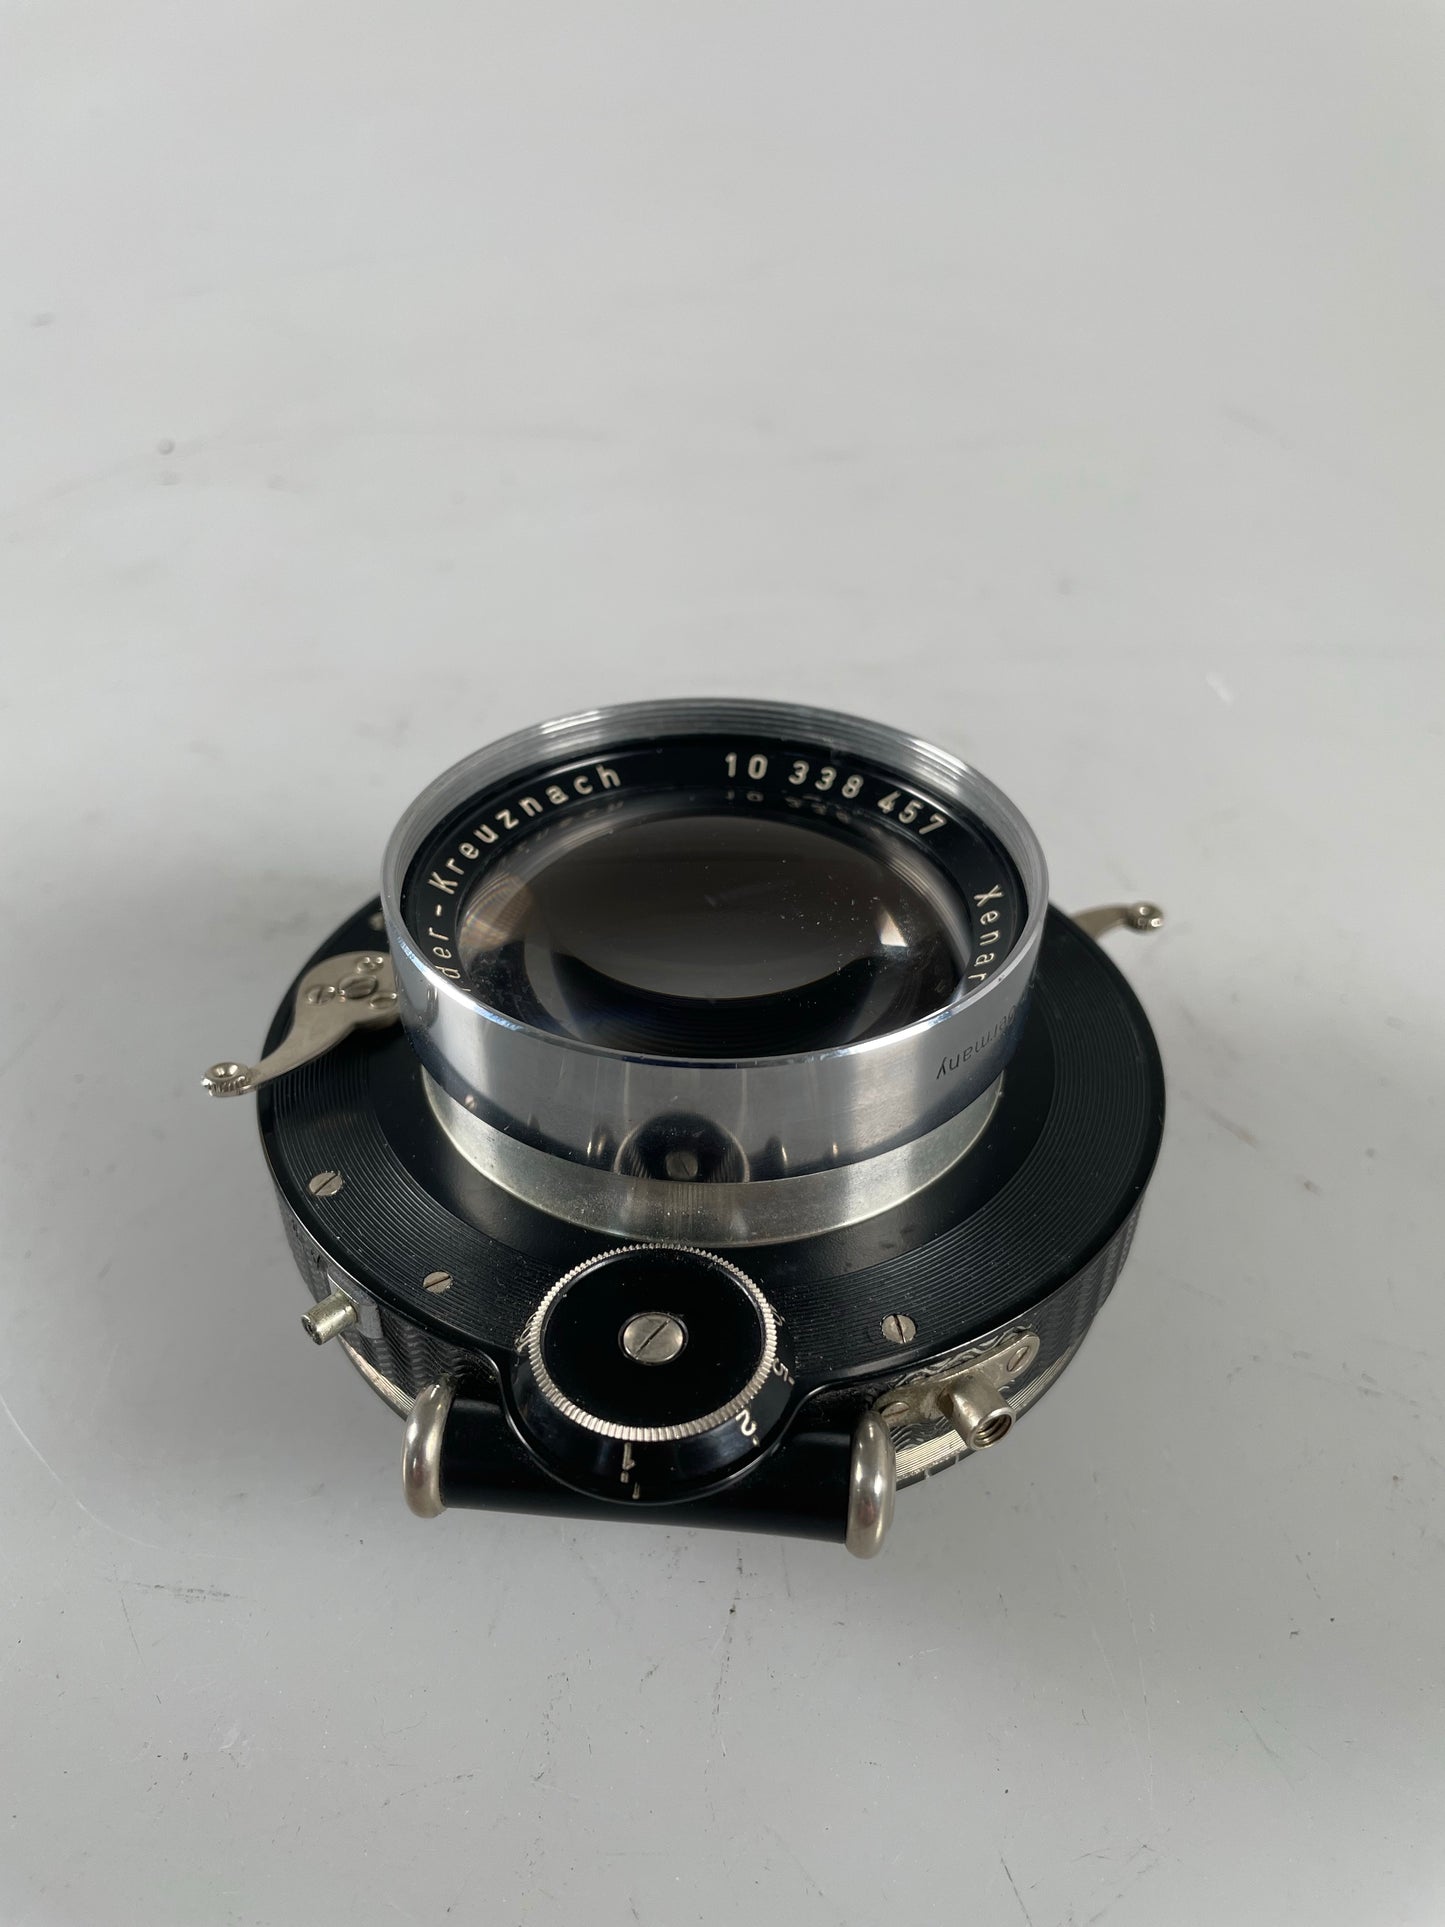 Schneider Xenar 210mm f4.5 Shutter Large Format Lens large format